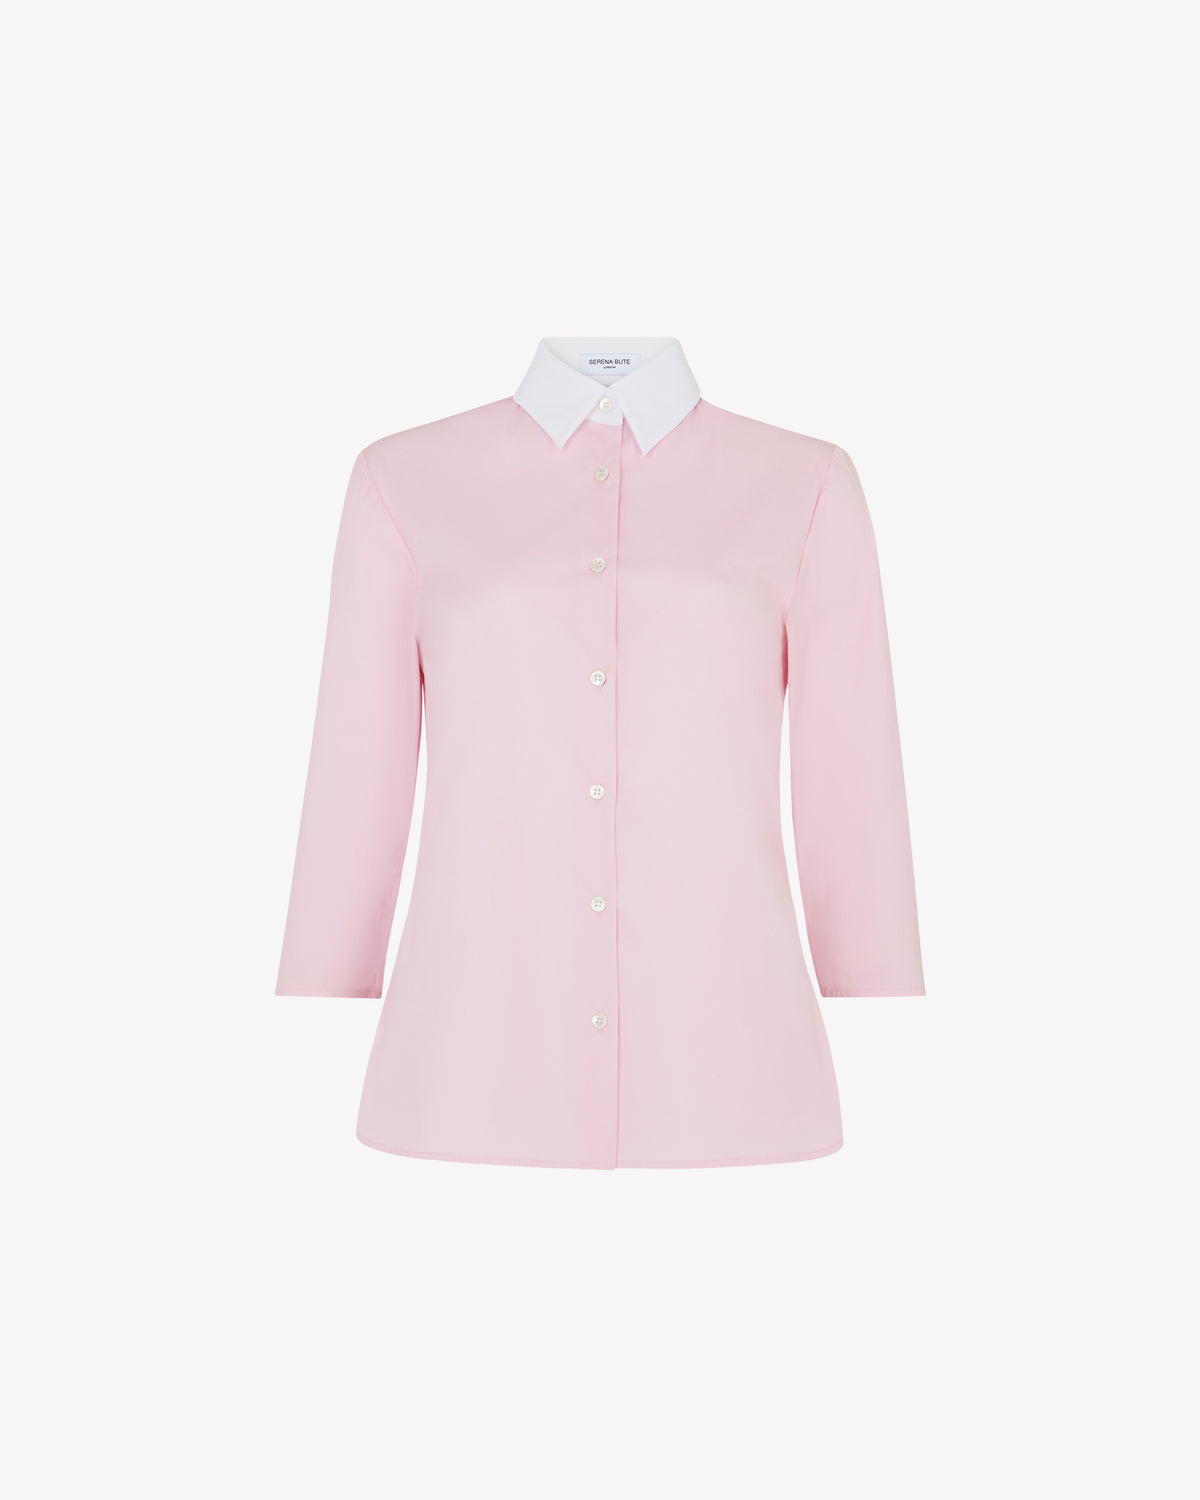 Capri Shirt - Rose Pink